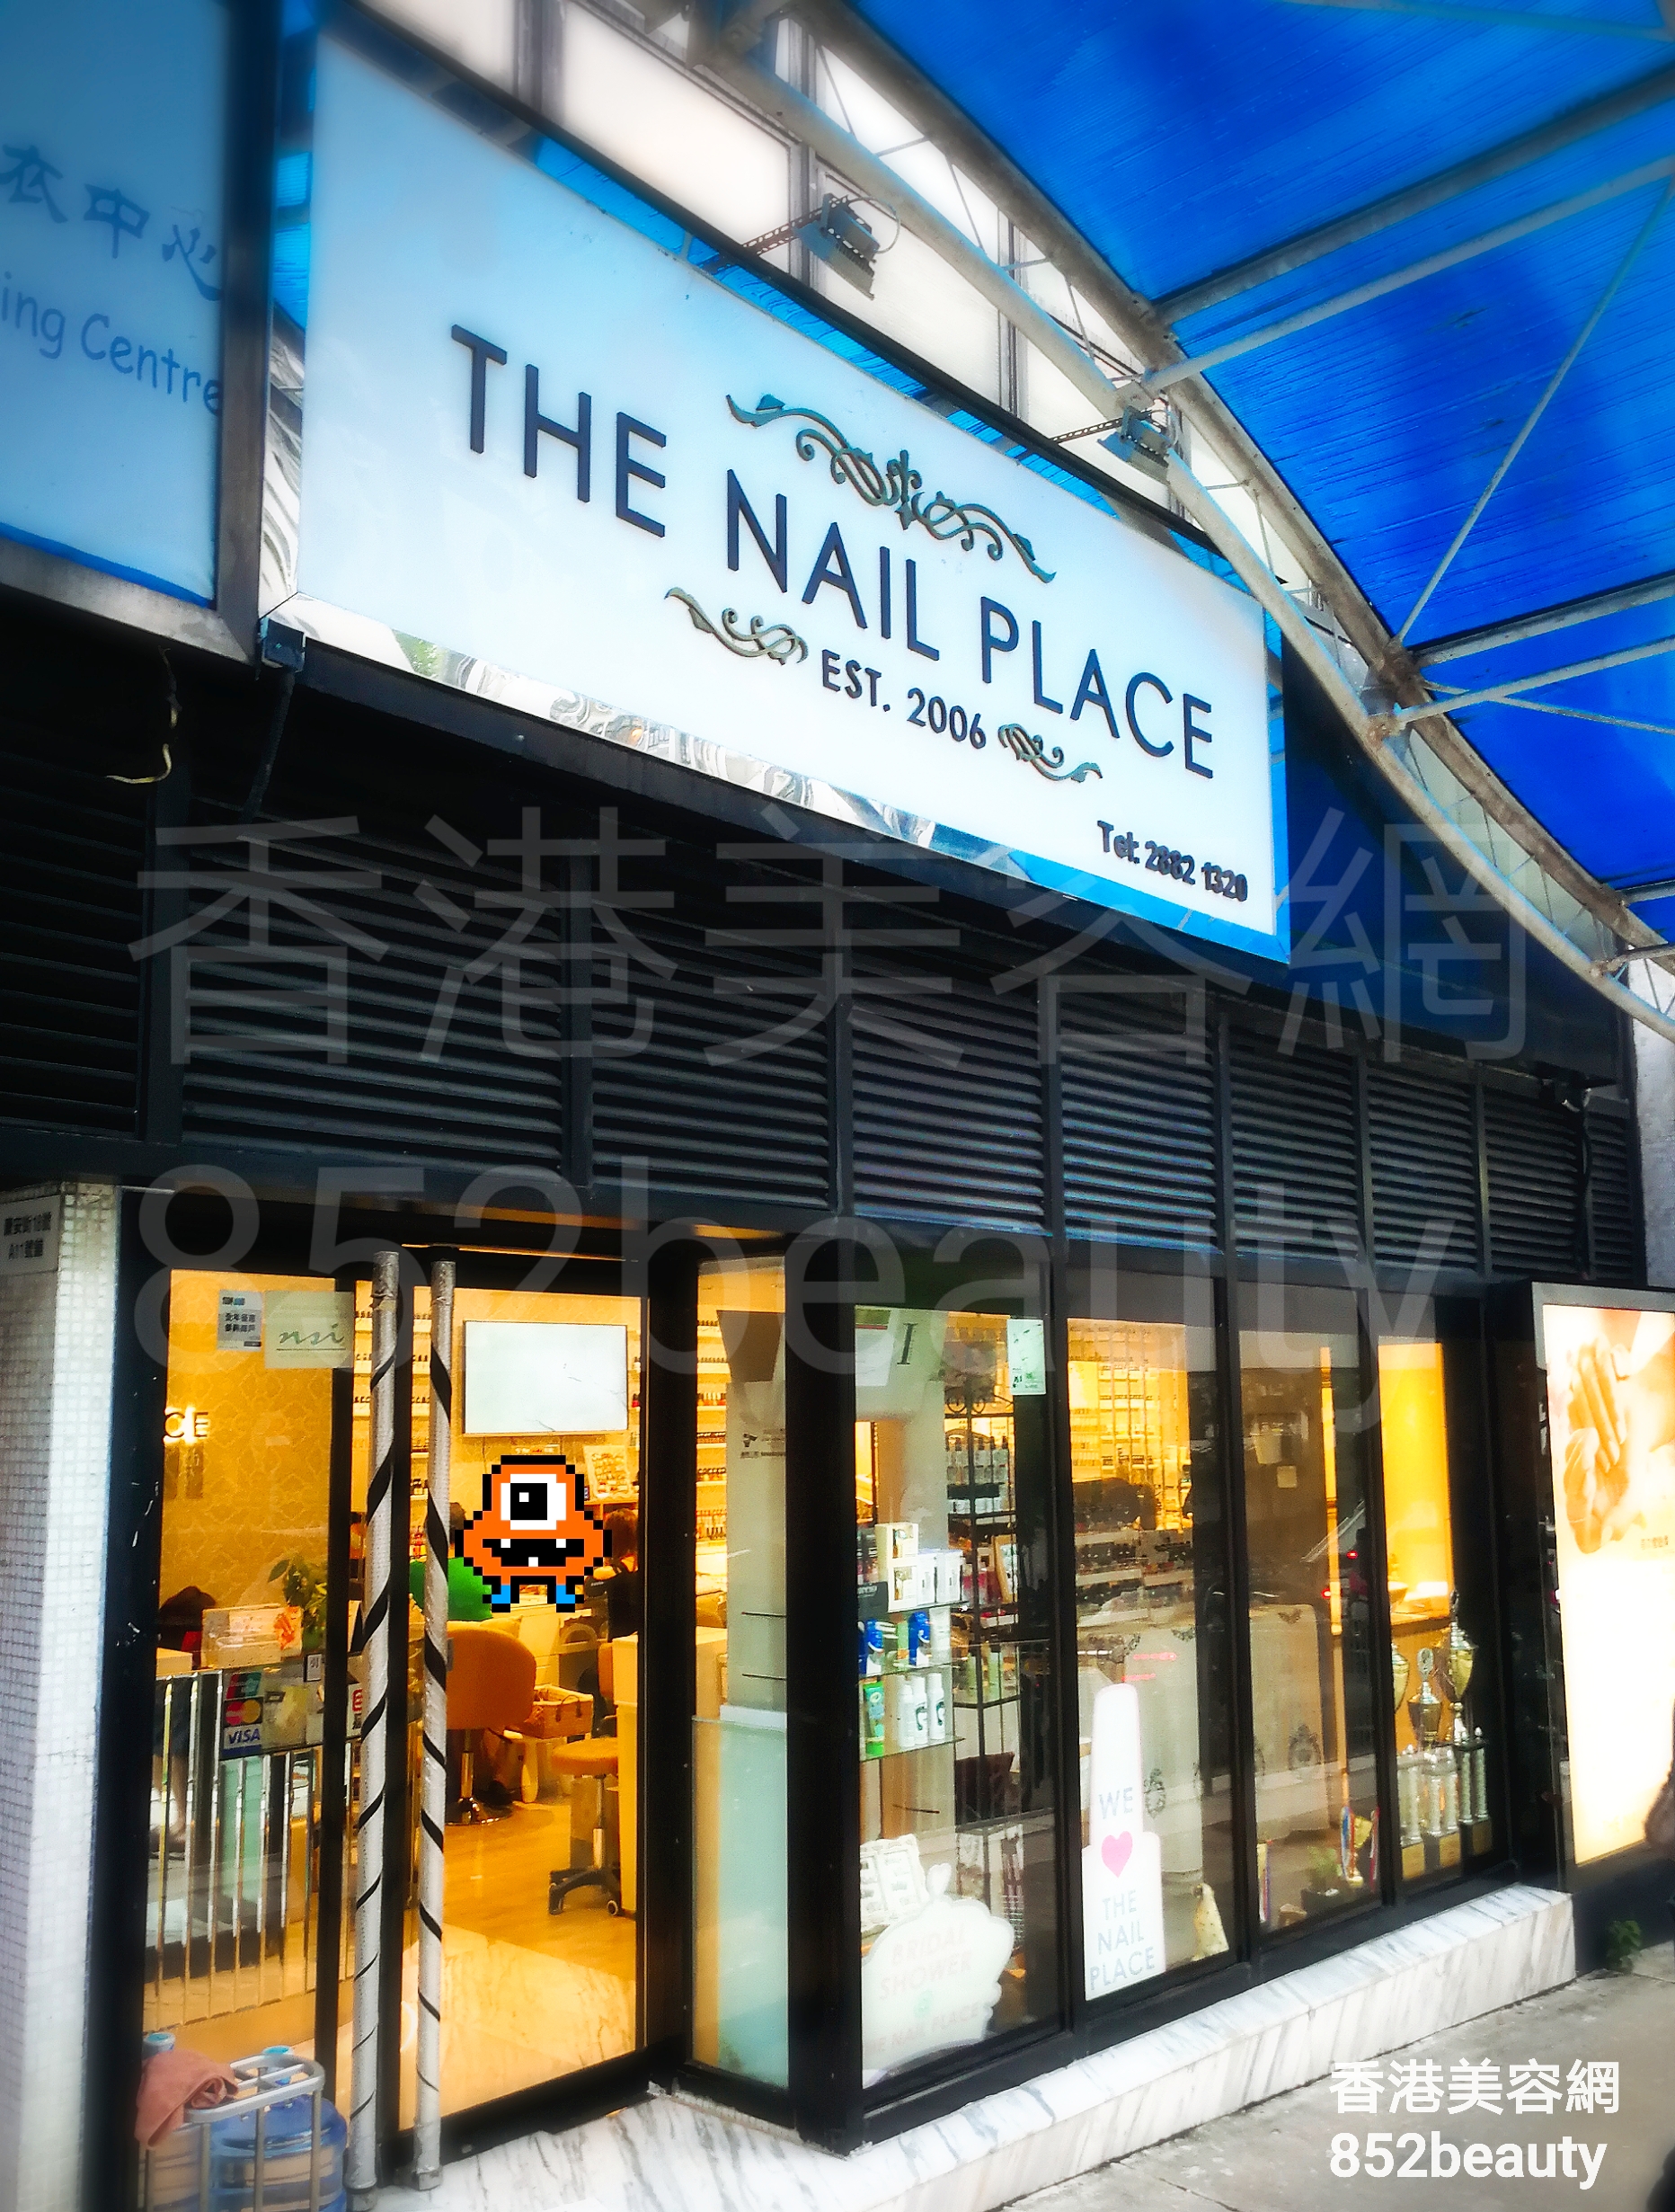 香港美容網 Hong Kong Beauty Salon 美容院 / 美容師: THE NAIL PLACE